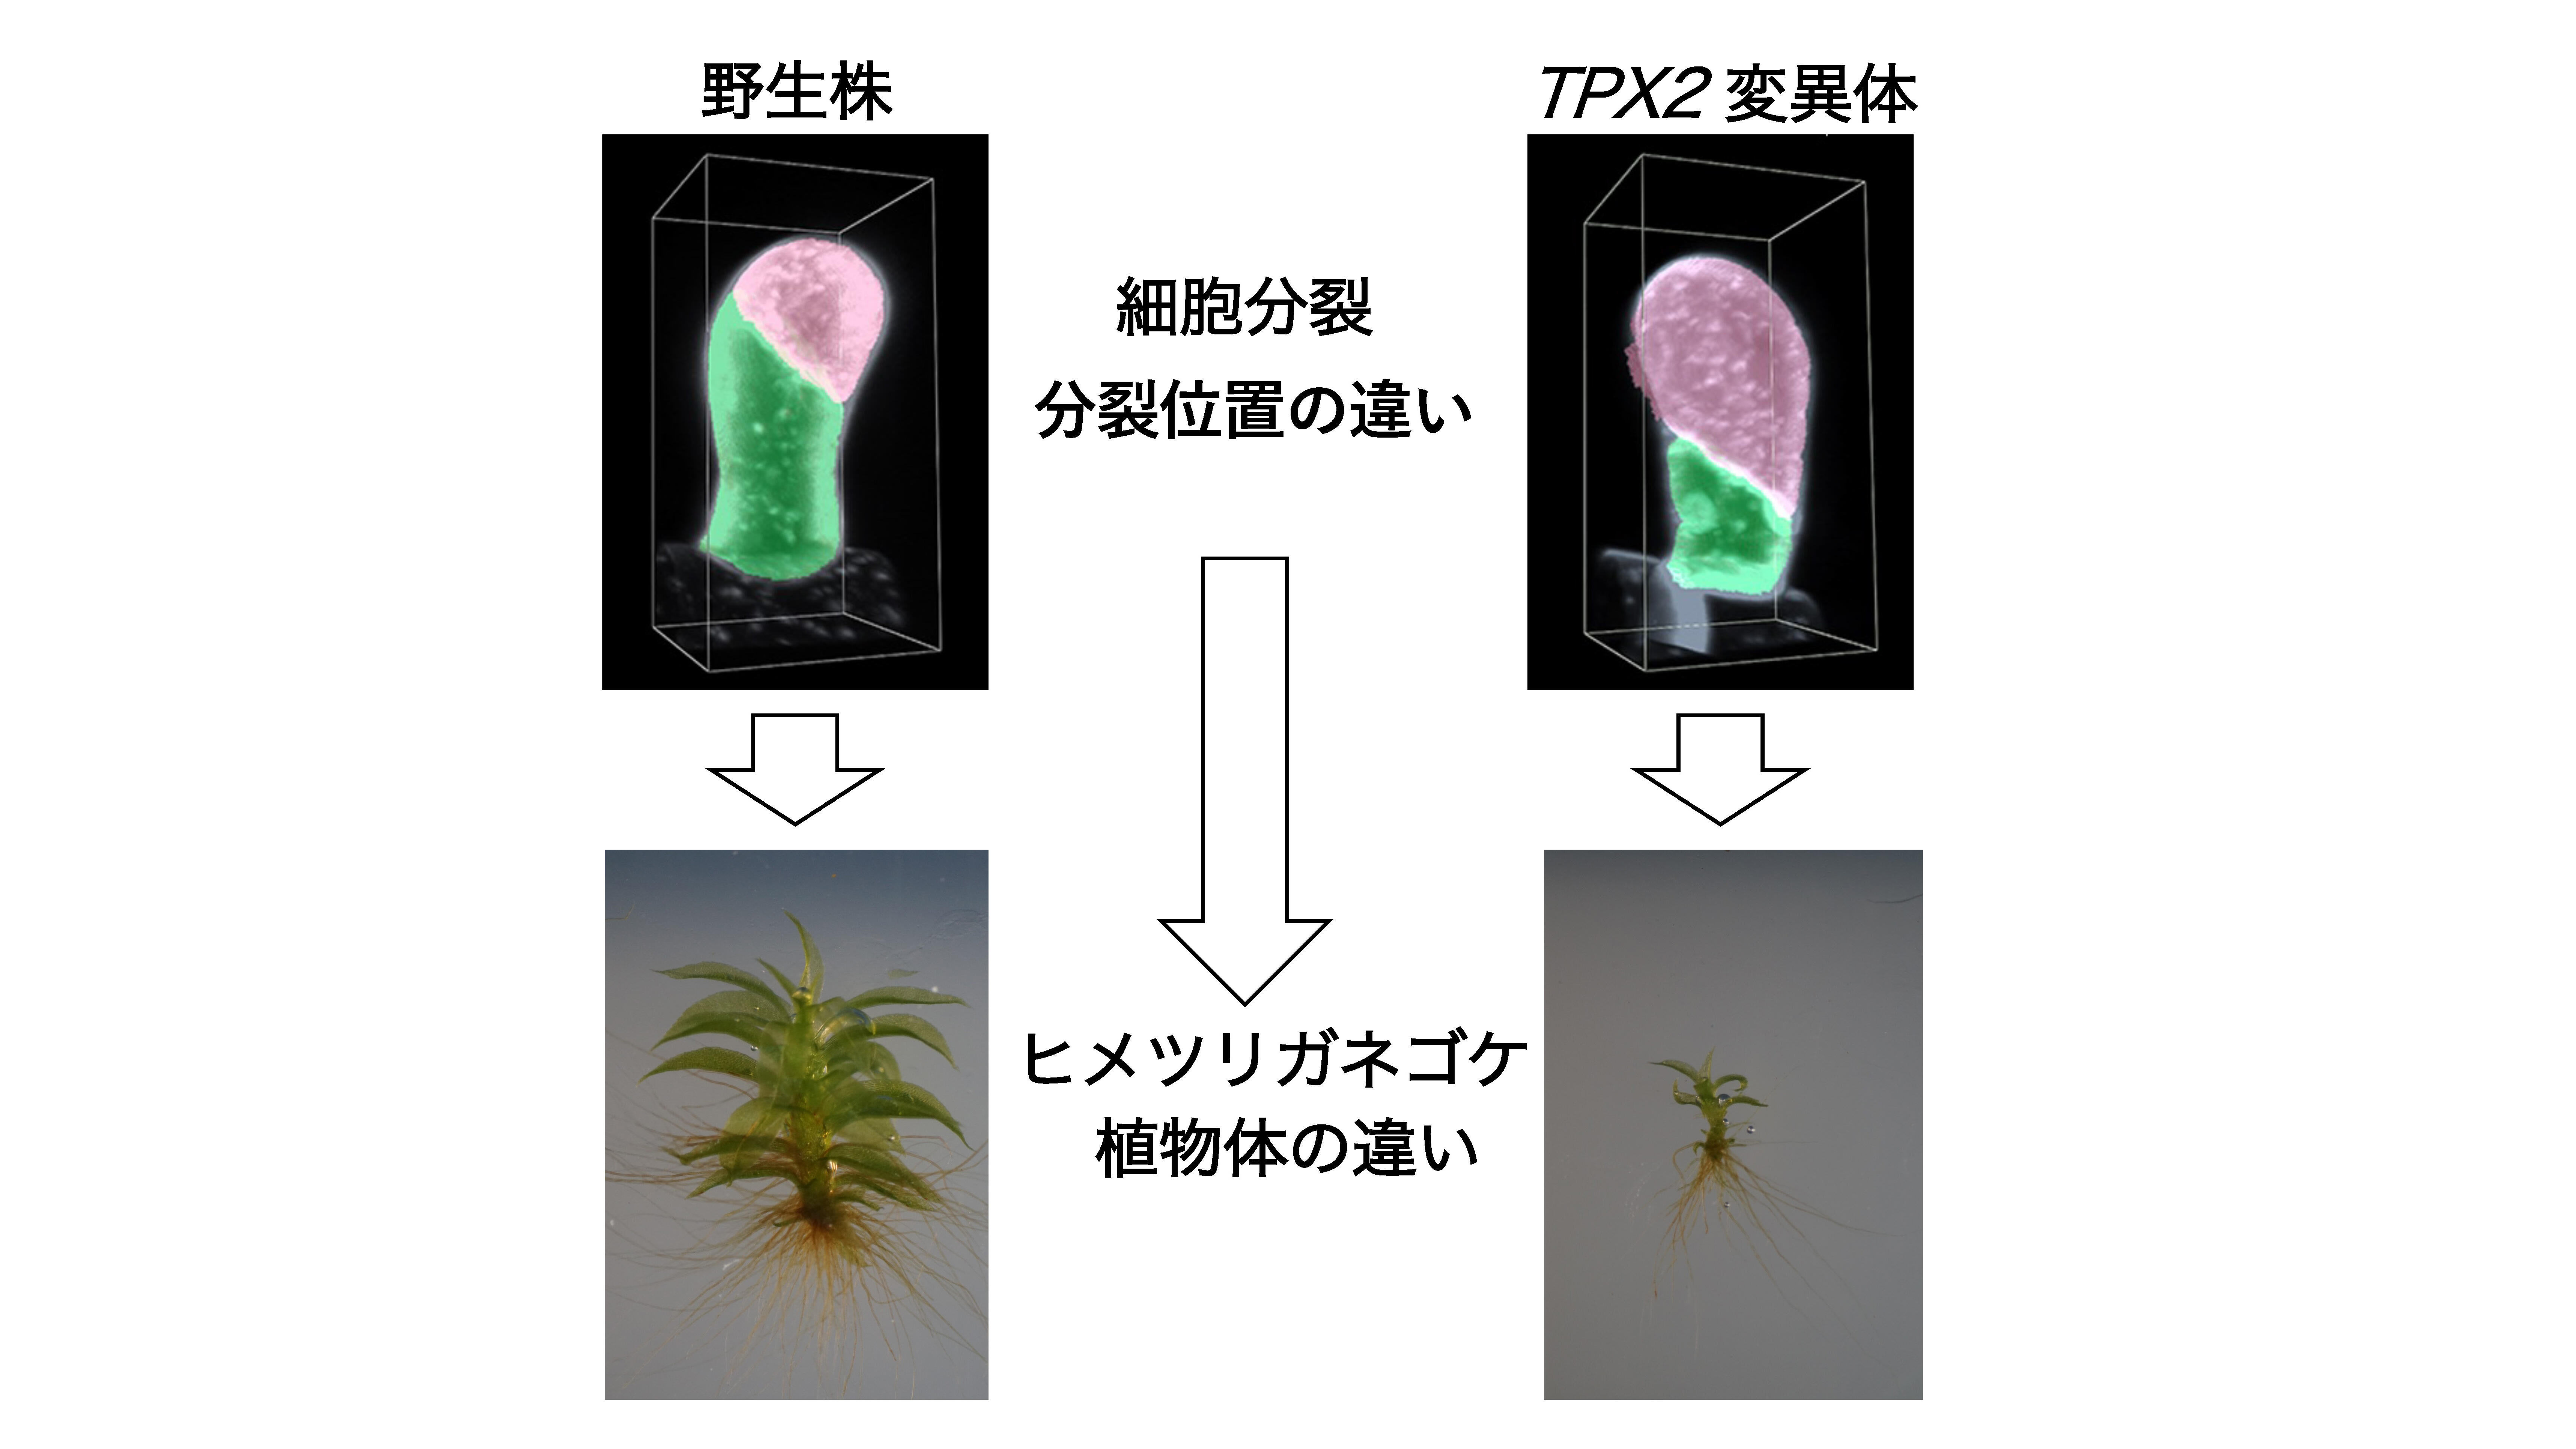 植物細胞が分裂する位置を決める新たな仕組みを発見 名古屋大学研究成果情報